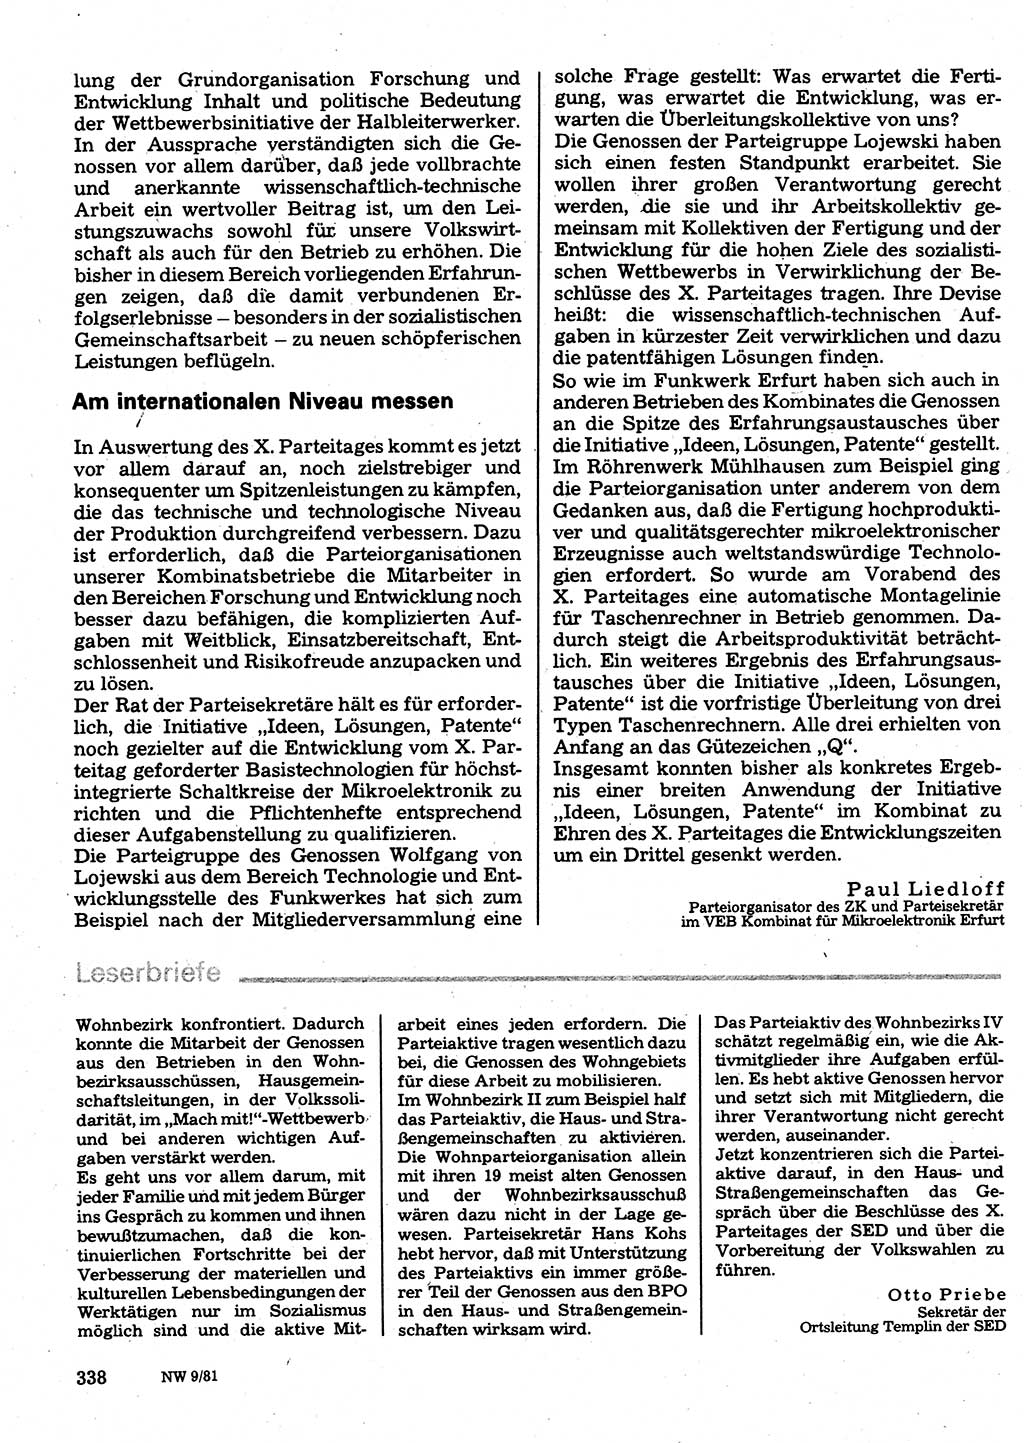 Neuer Weg (NW), Organ des Zentralkomitees (ZK) der SED (Sozialistische Einheitspartei Deutschlands) für Fragen des Parteilebens, 36. Jahrgang [Deutsche Demokratische Republik (DDR)] 1981, Seite 338 (NW ZK SED DDR 1981, S. 338)